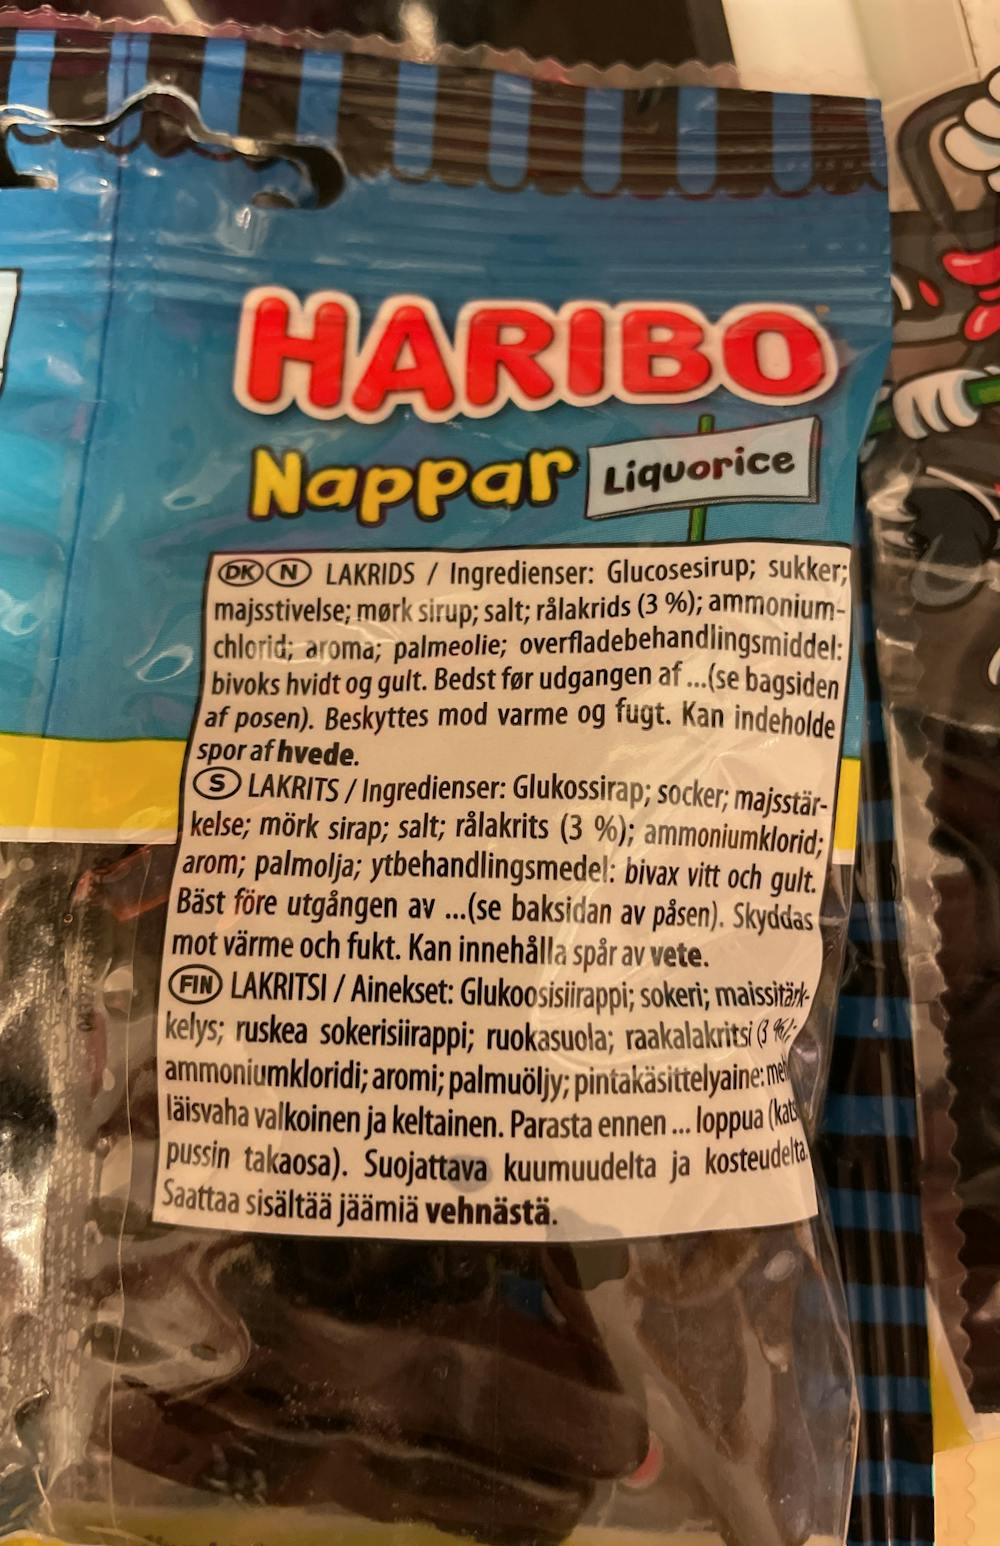 Ingrediensliste - Nappar, liquorice, Haribo